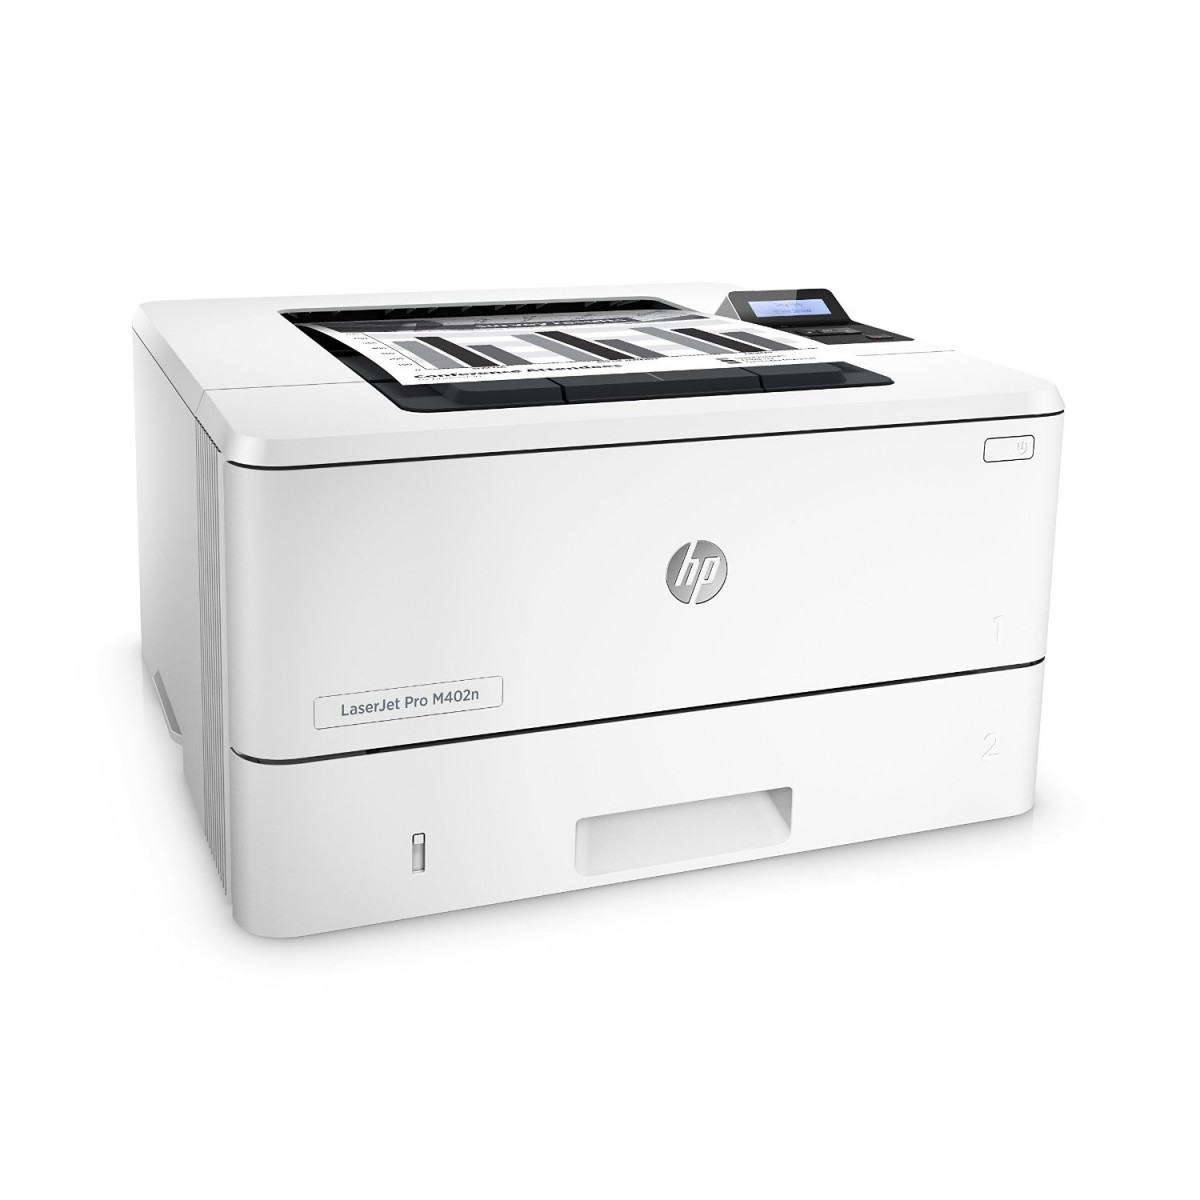 hp laserjet pro m402n home printer review